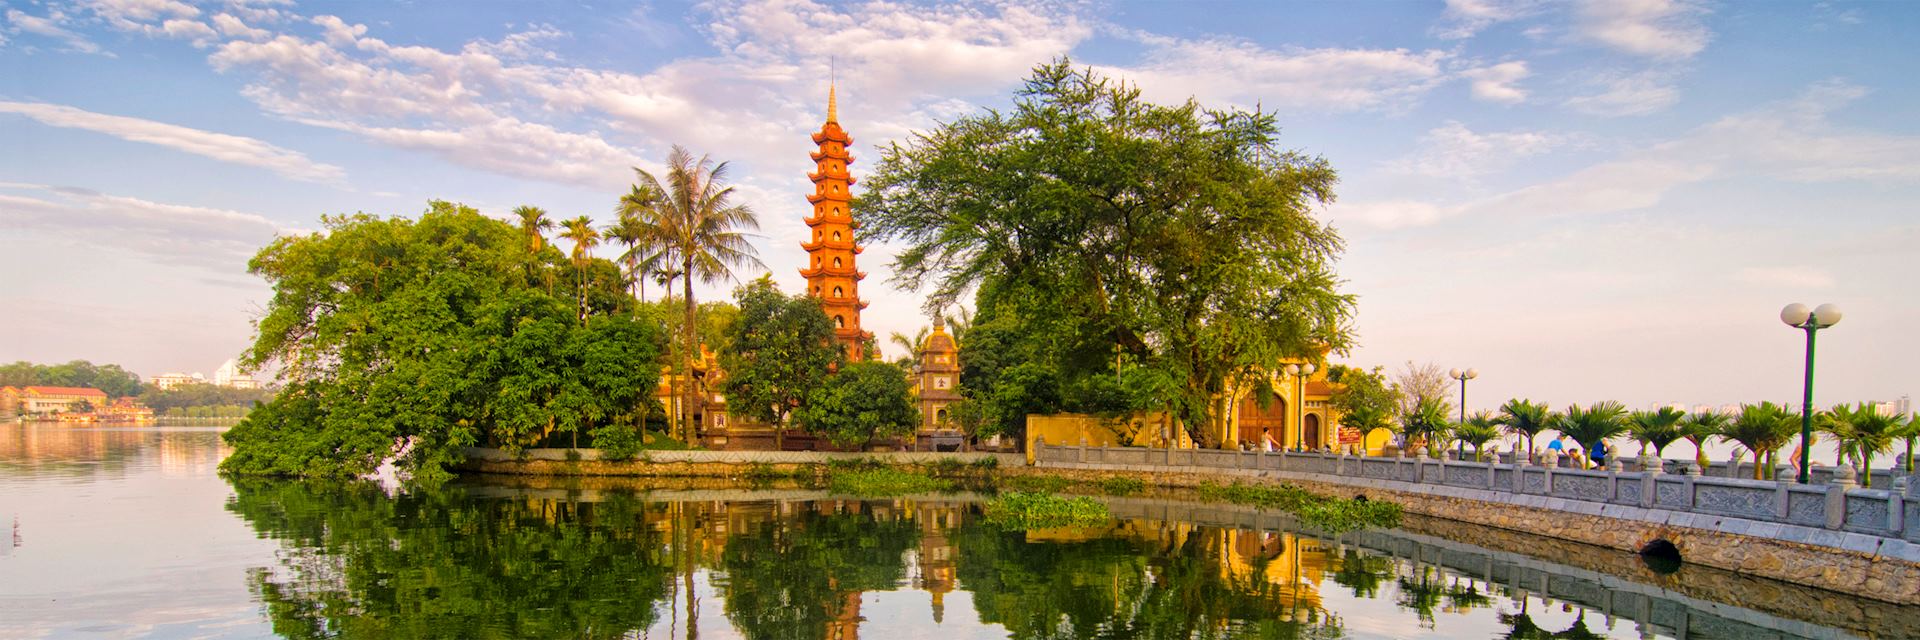 Hanoi City Tour, Vietnam | Audley Travel US